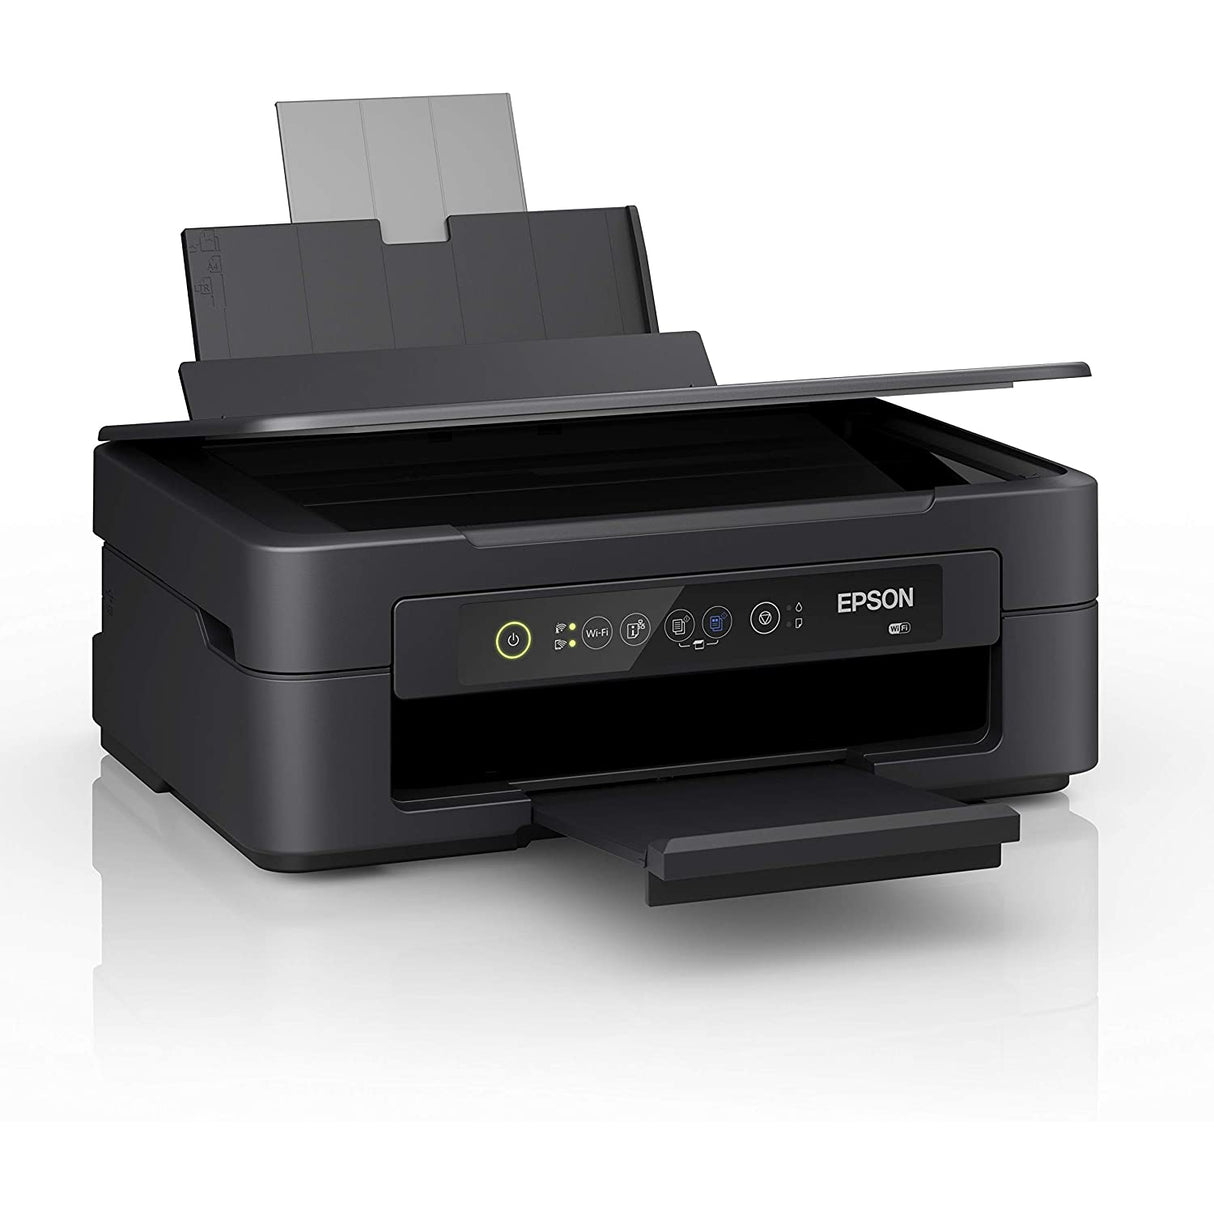 Epson Expression Home XP-2100 Print/Scan/Copy Wi-Fi Printer, Black